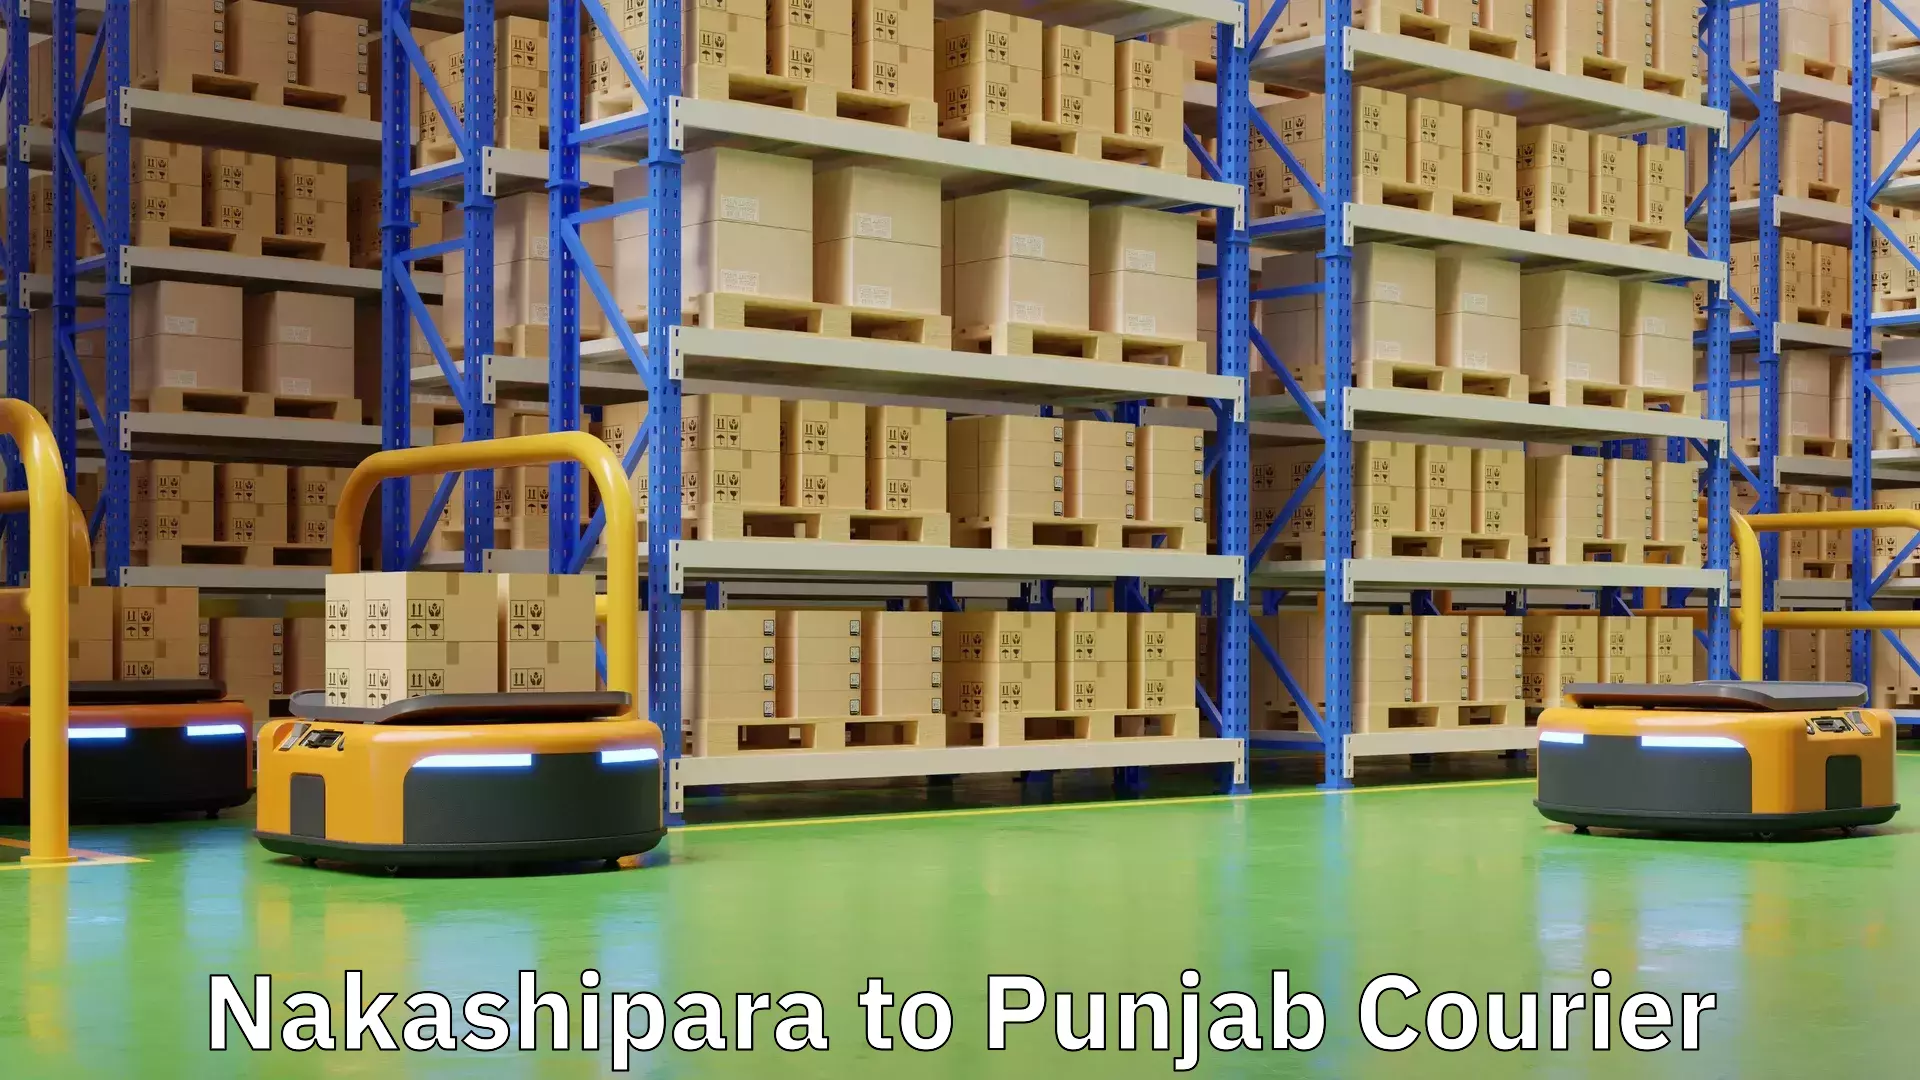 Online courier booking in Nakashipara to Punjab